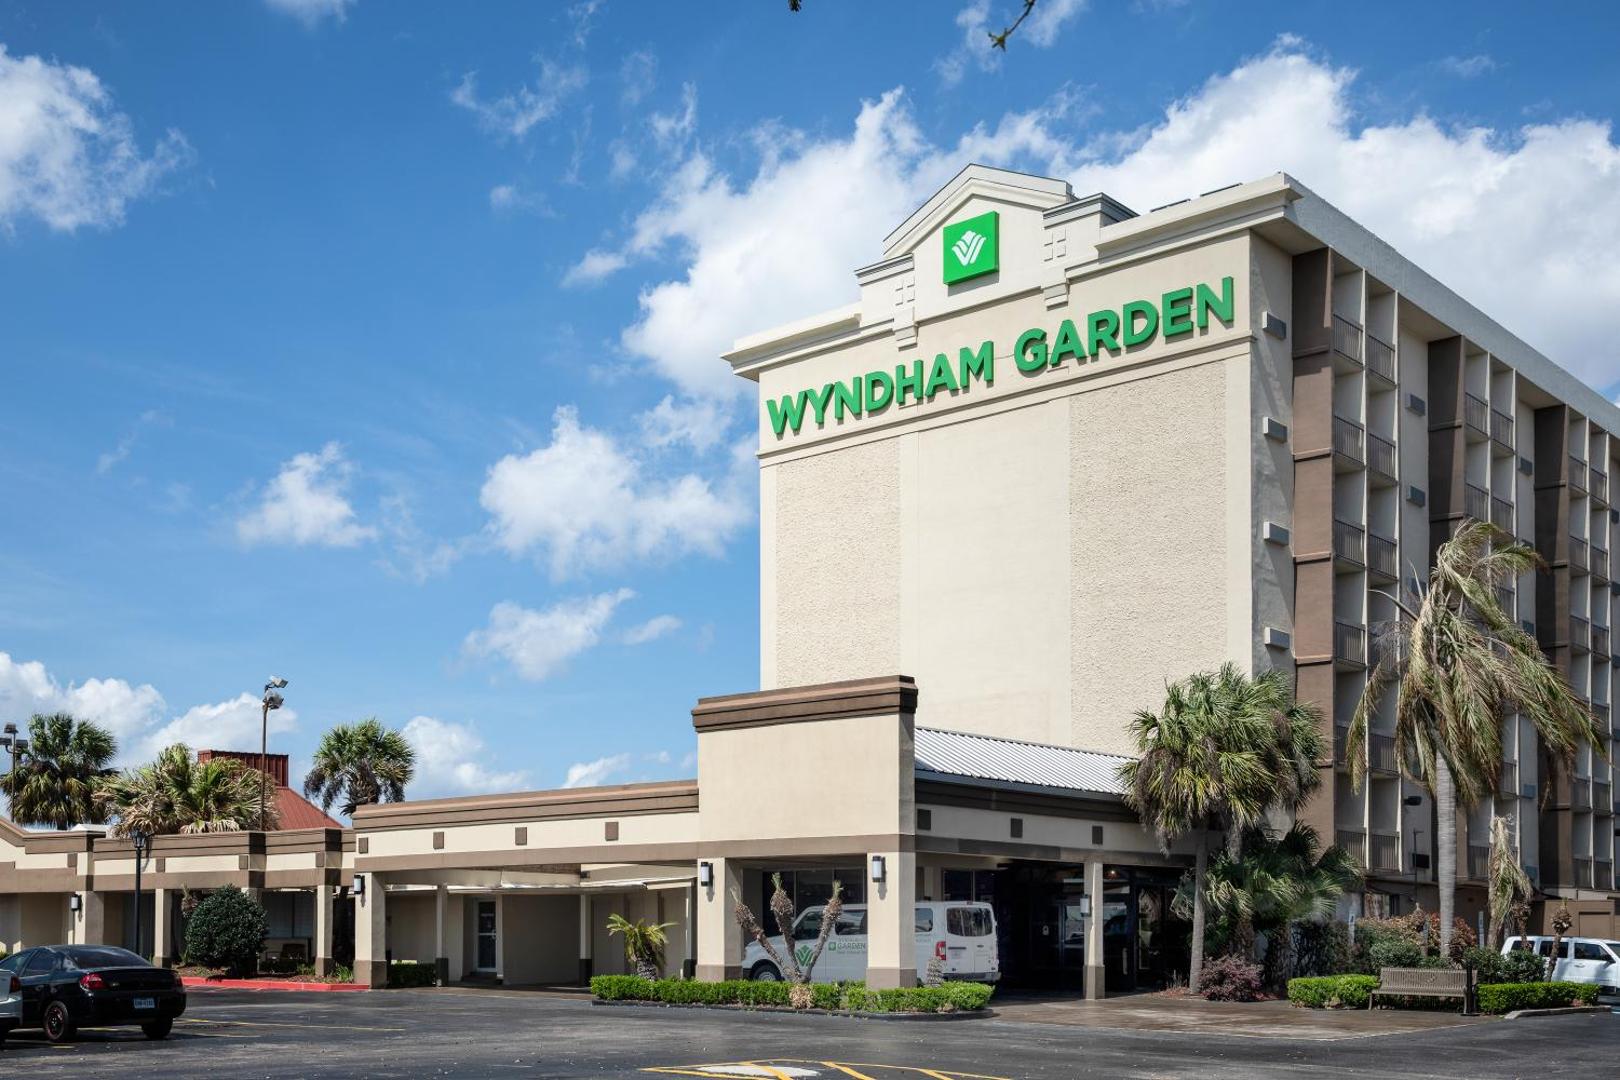 Wyndham Garden New Orleans Airport